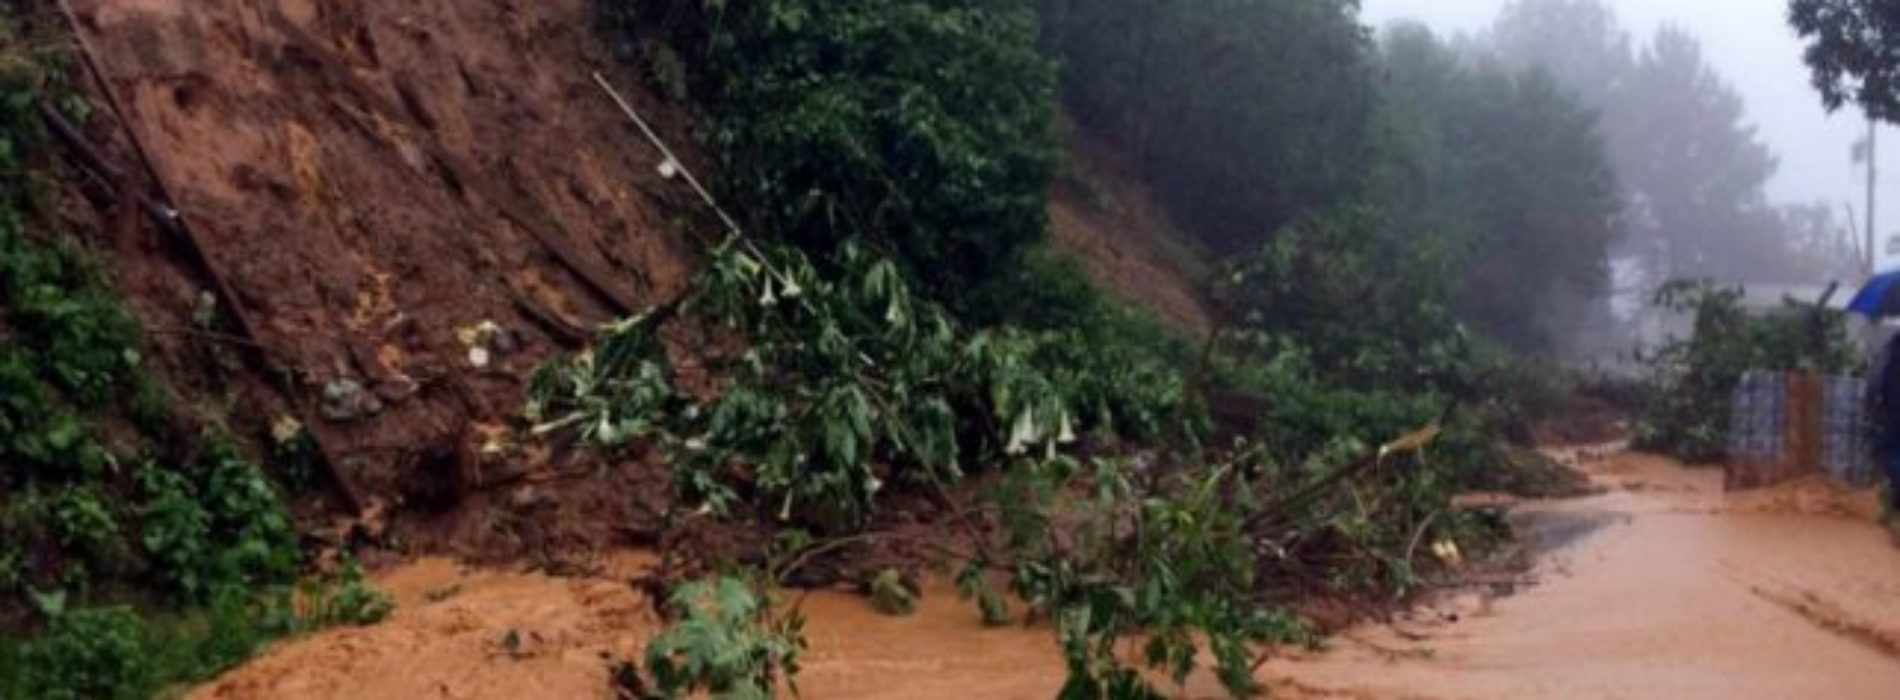 Confirman 7 víctimas mortales por lluvias en Oaxaca